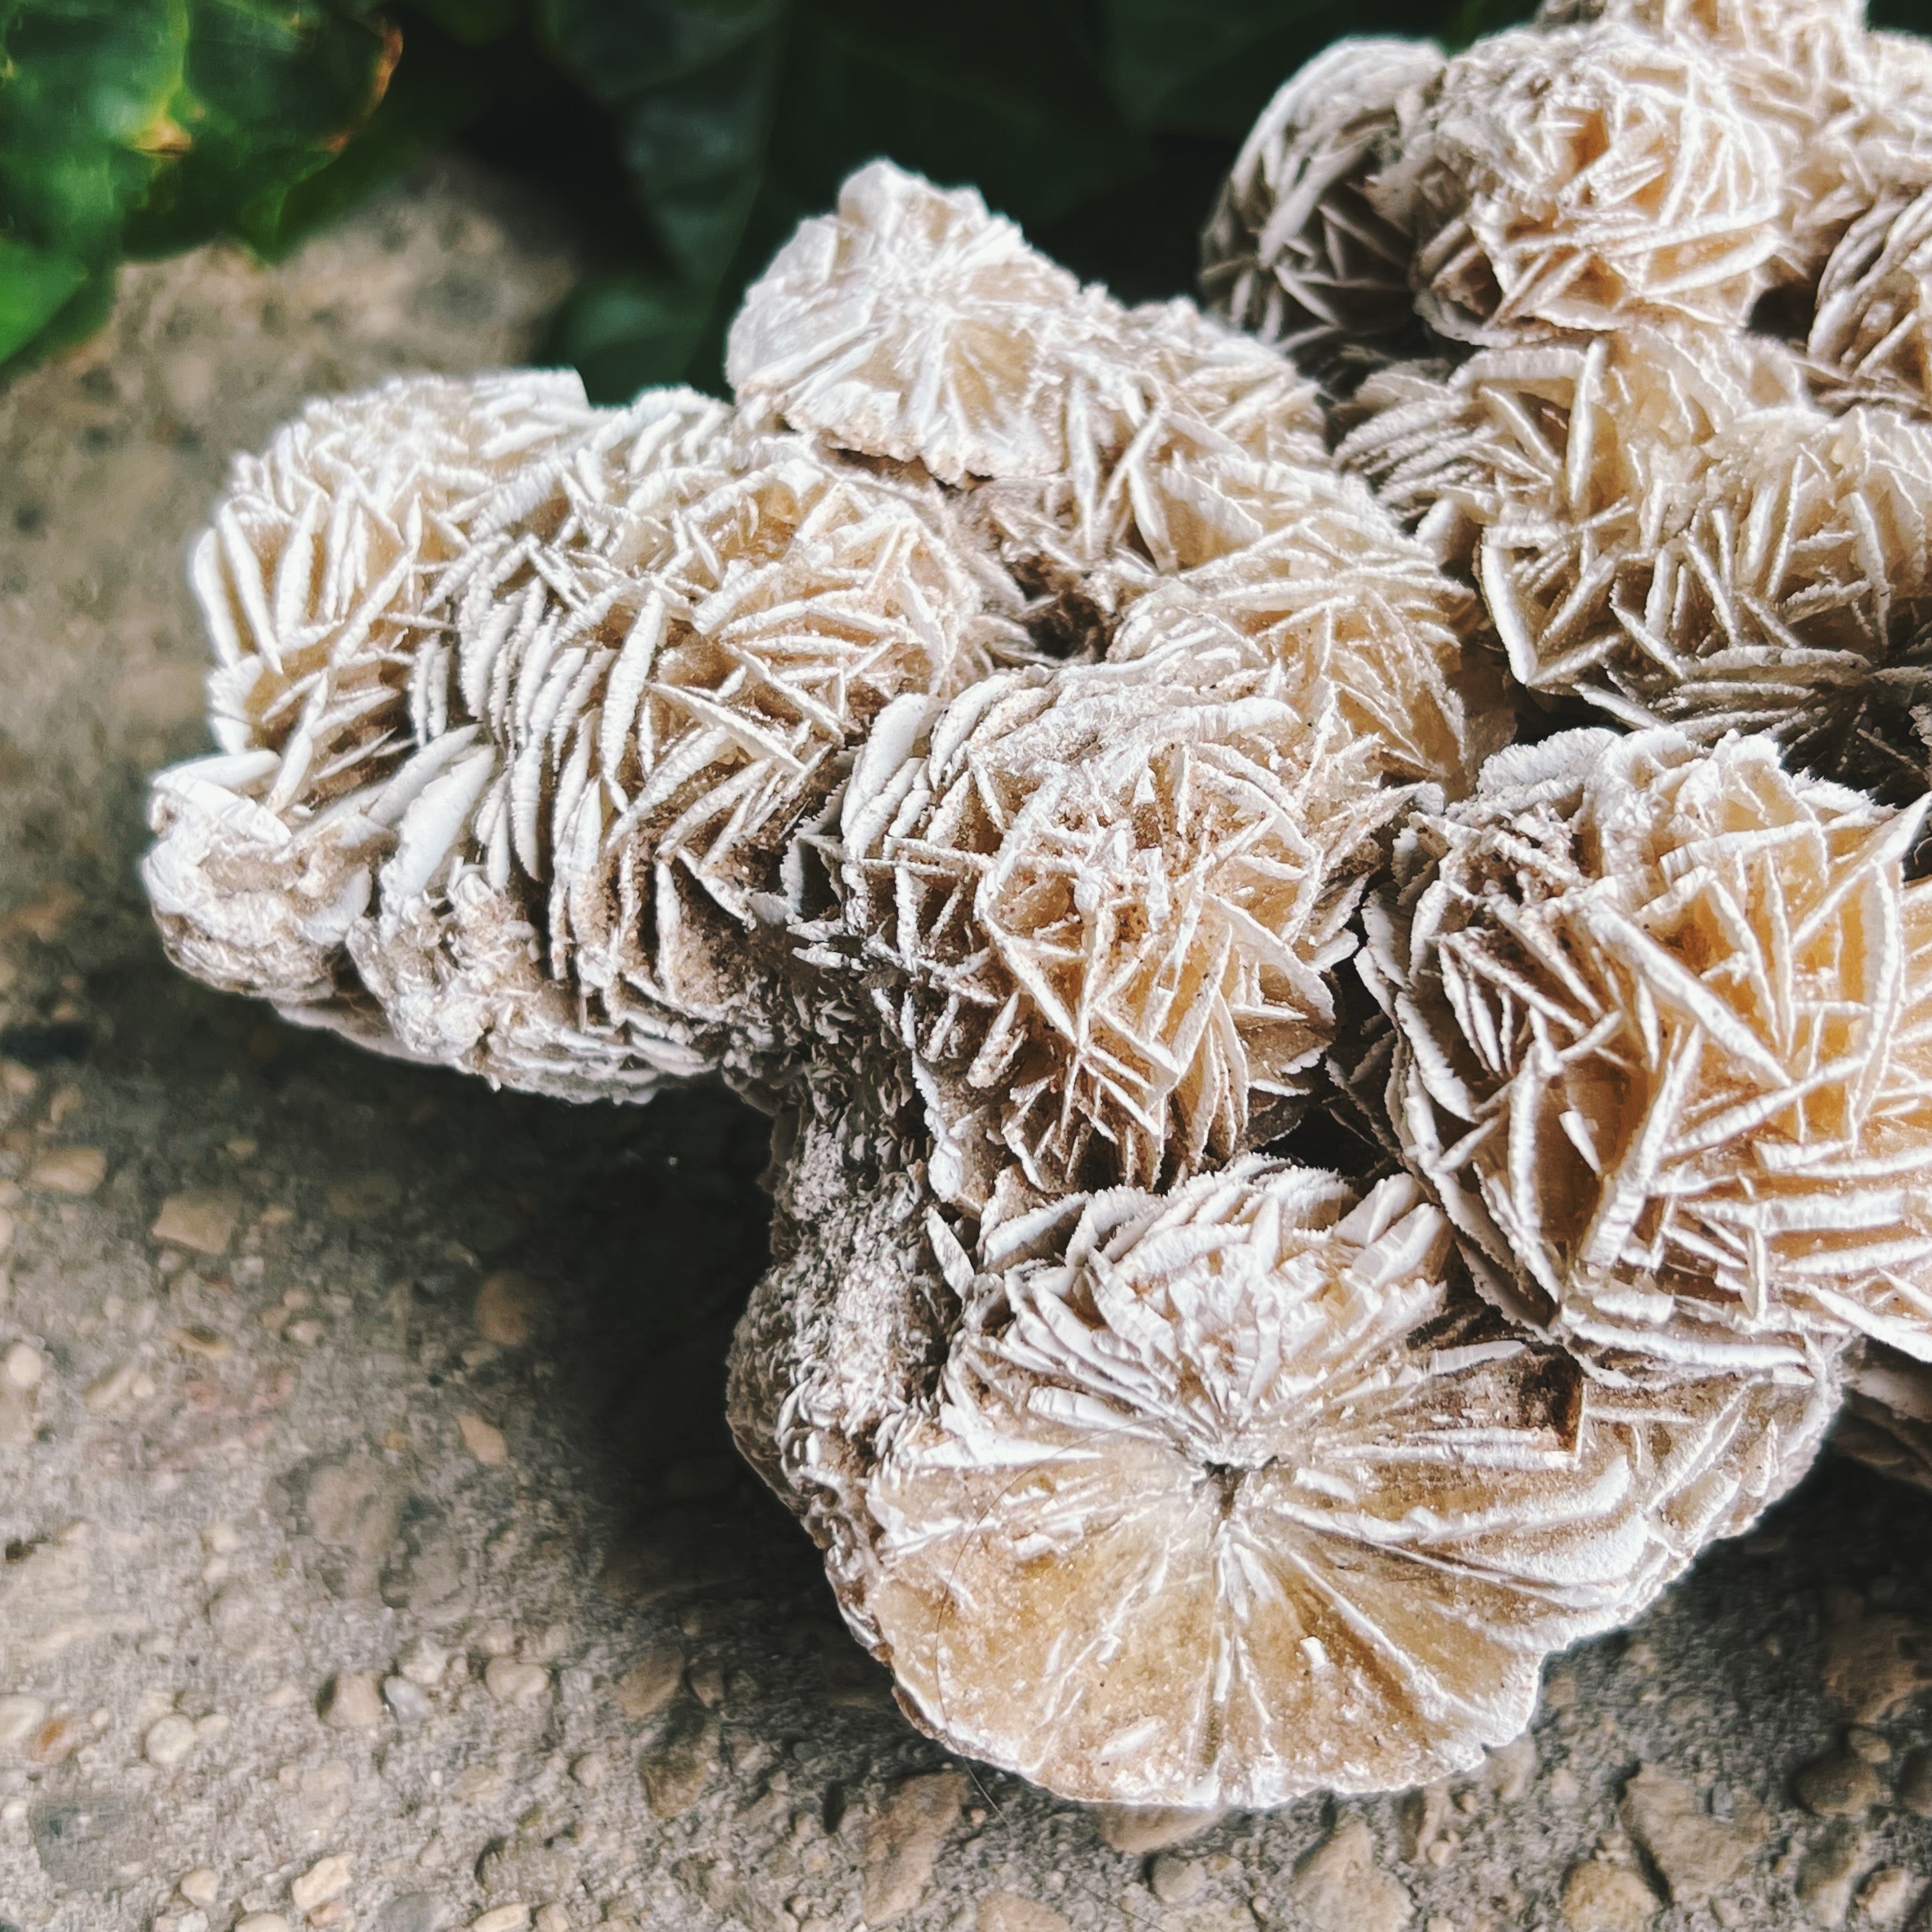 Desert Rose (Selenite) Cluster